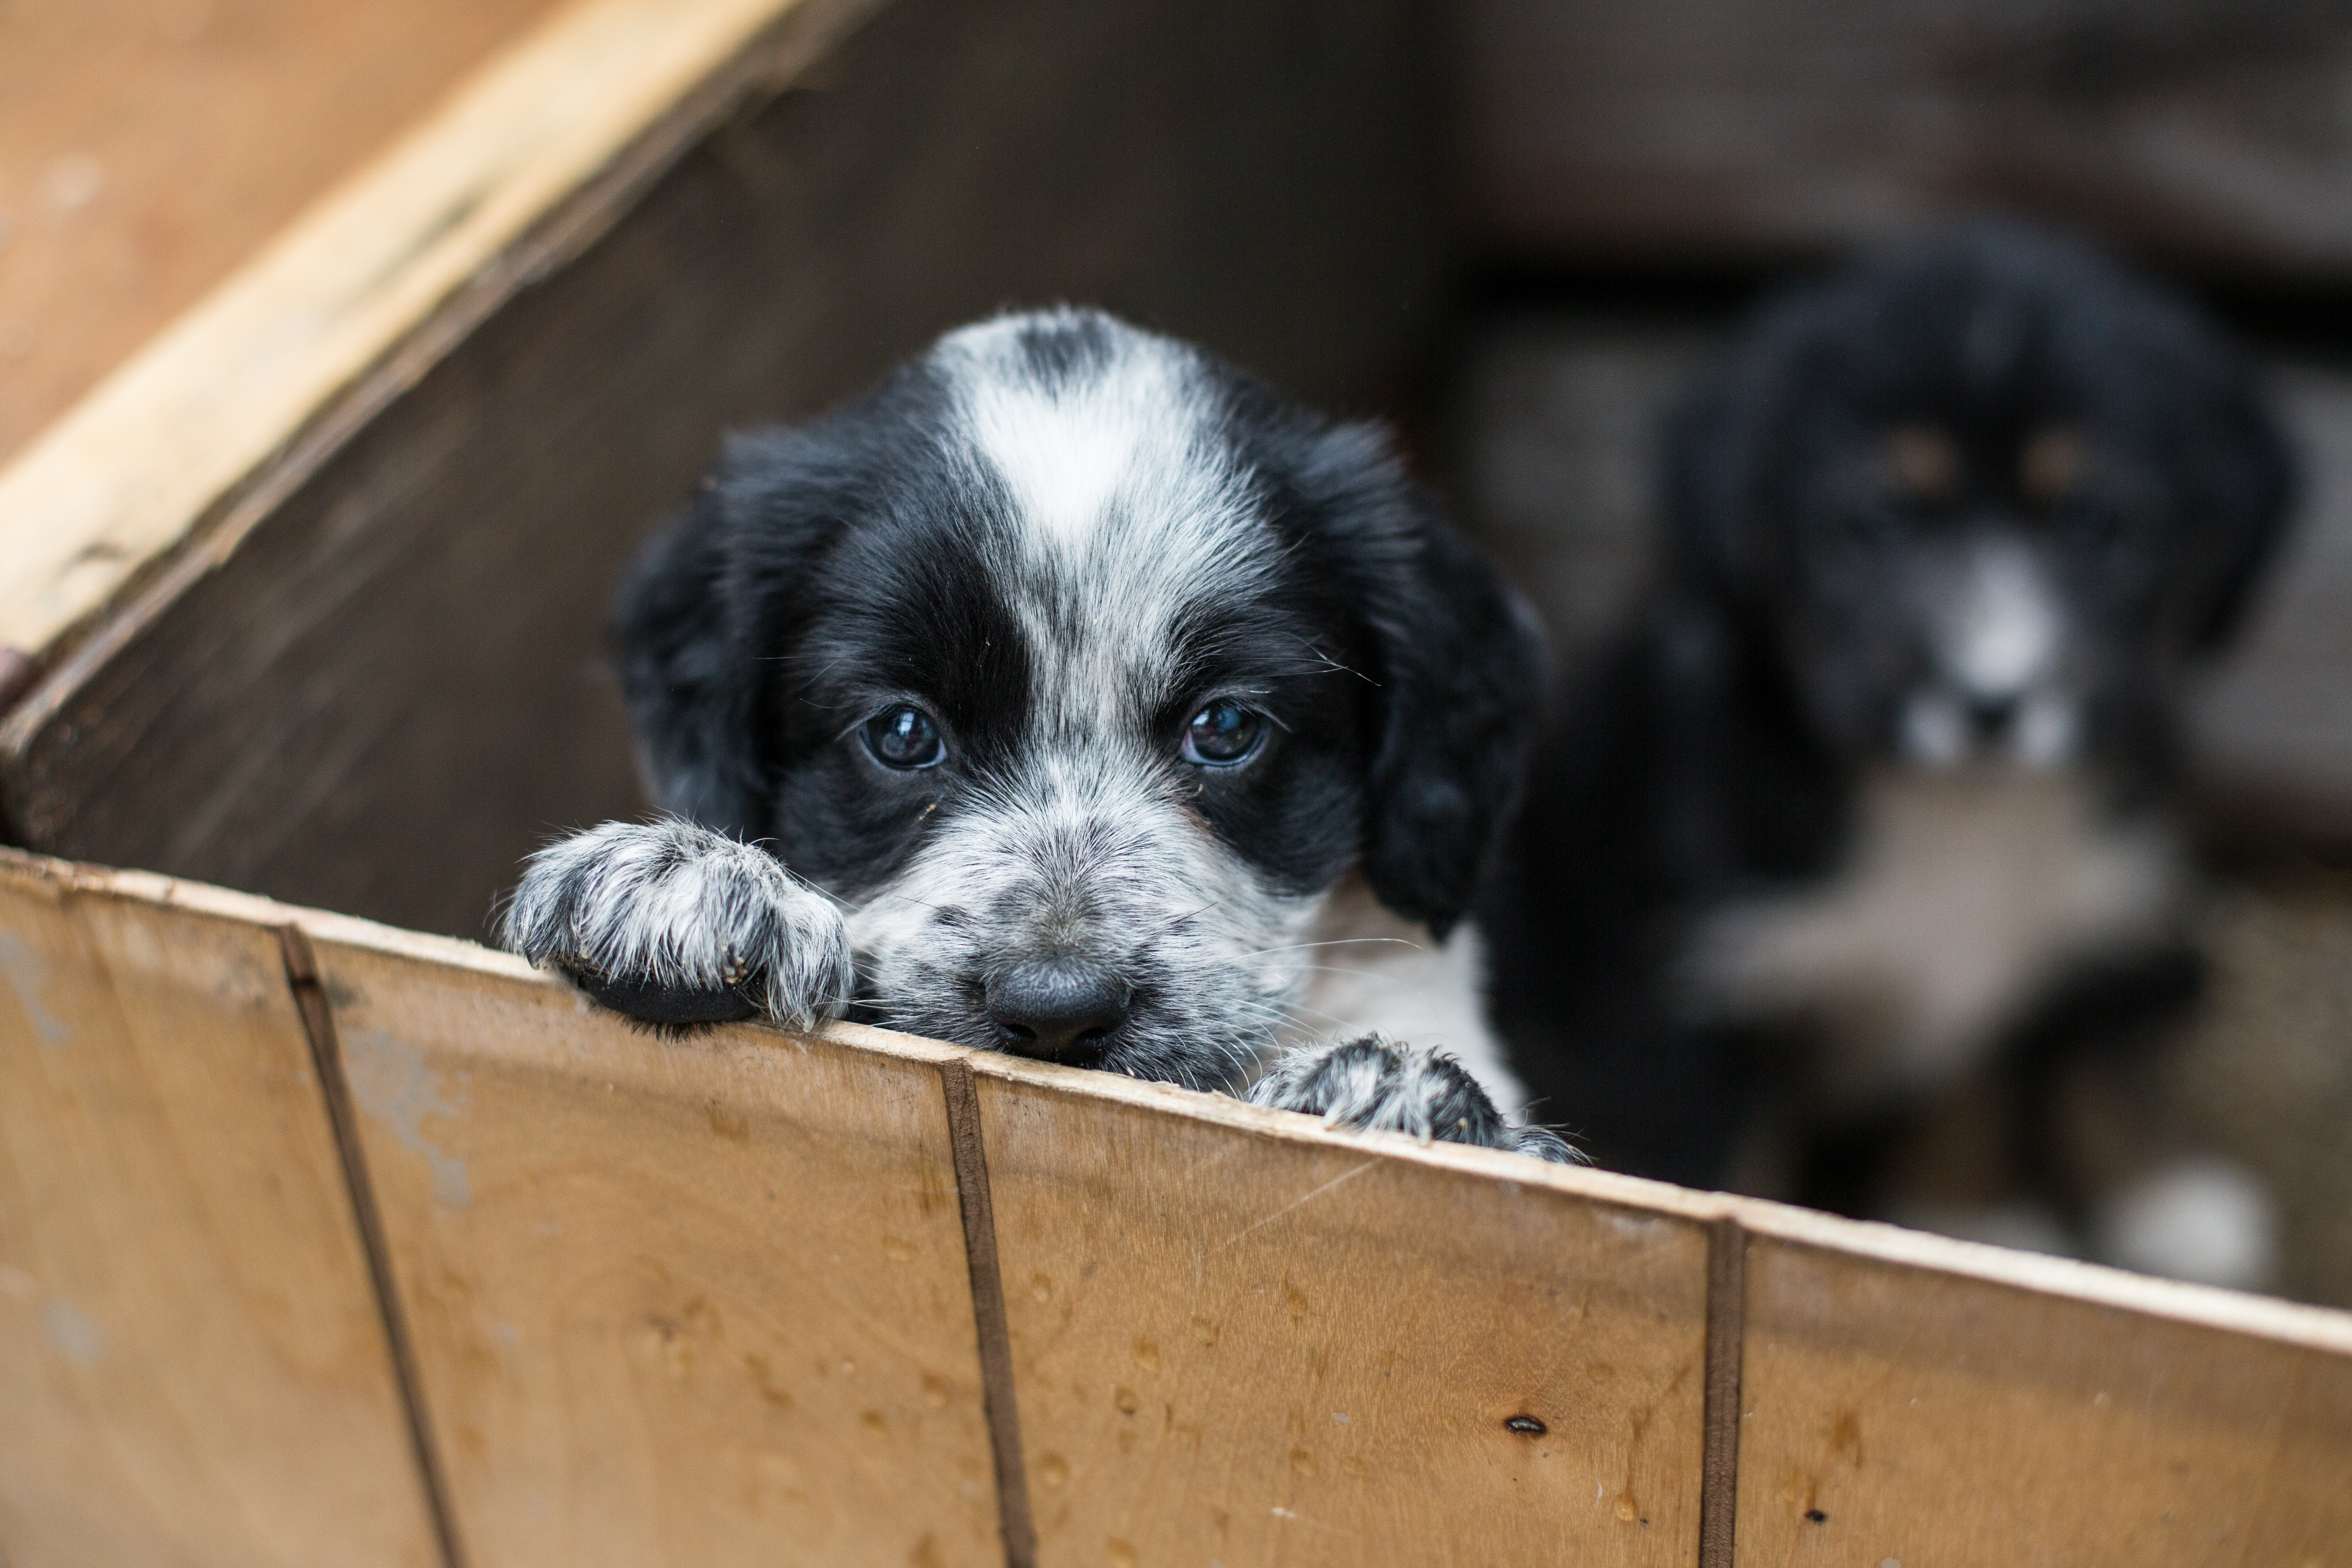 Prominent Gietvorm levering Een puppy adopteren uit het asiel - Waar moet ik opletten? | zooplus